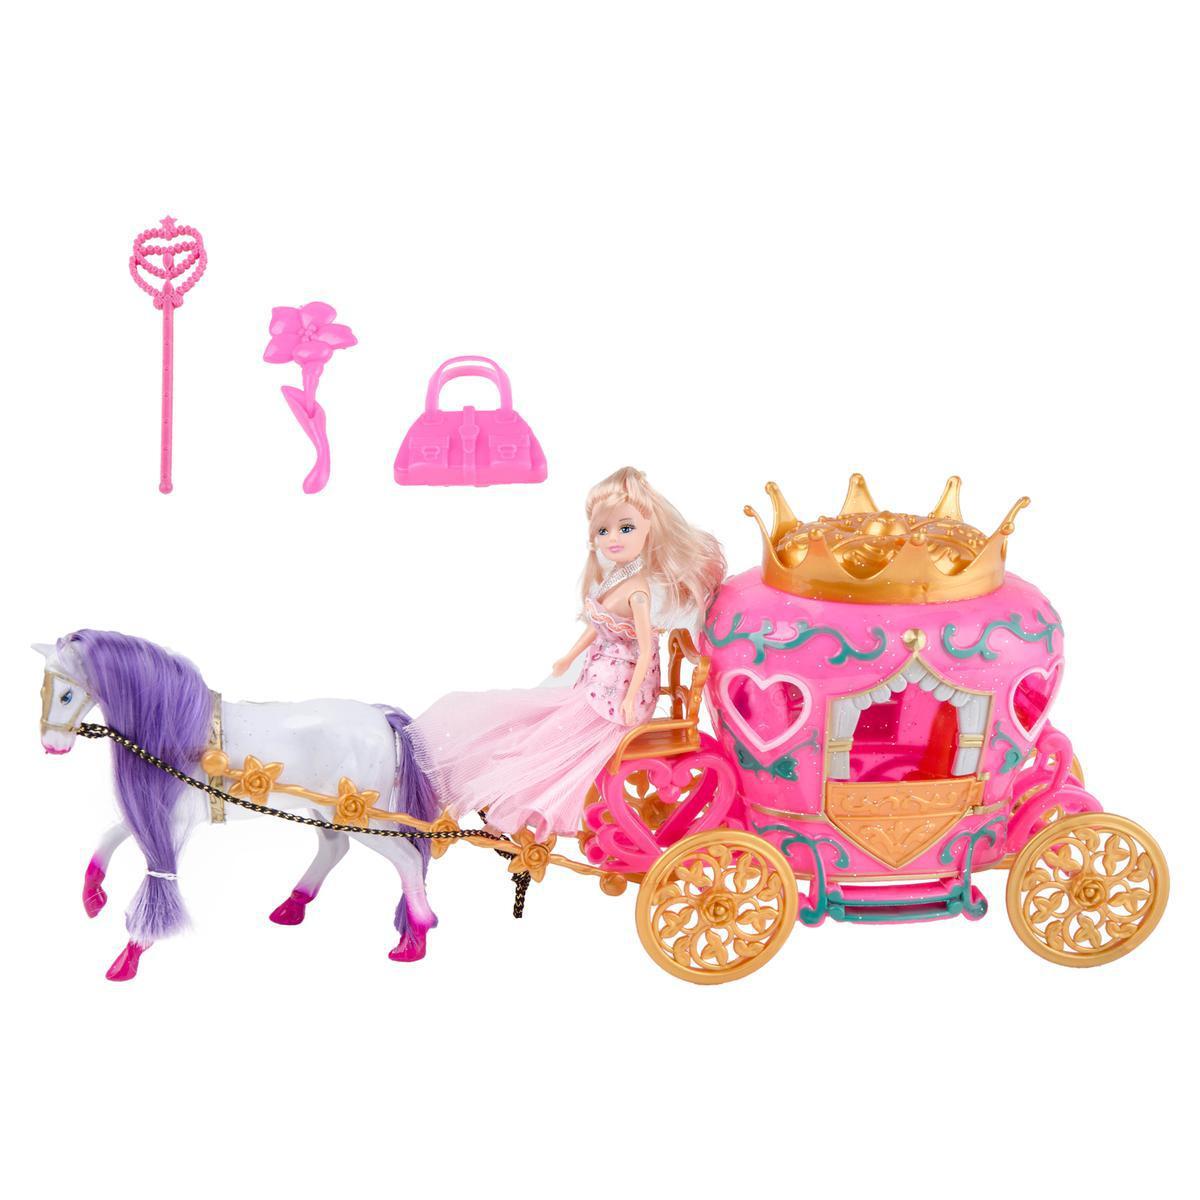 Poupée, carrosse, cheval et accessoires - Plastique - Multicolore